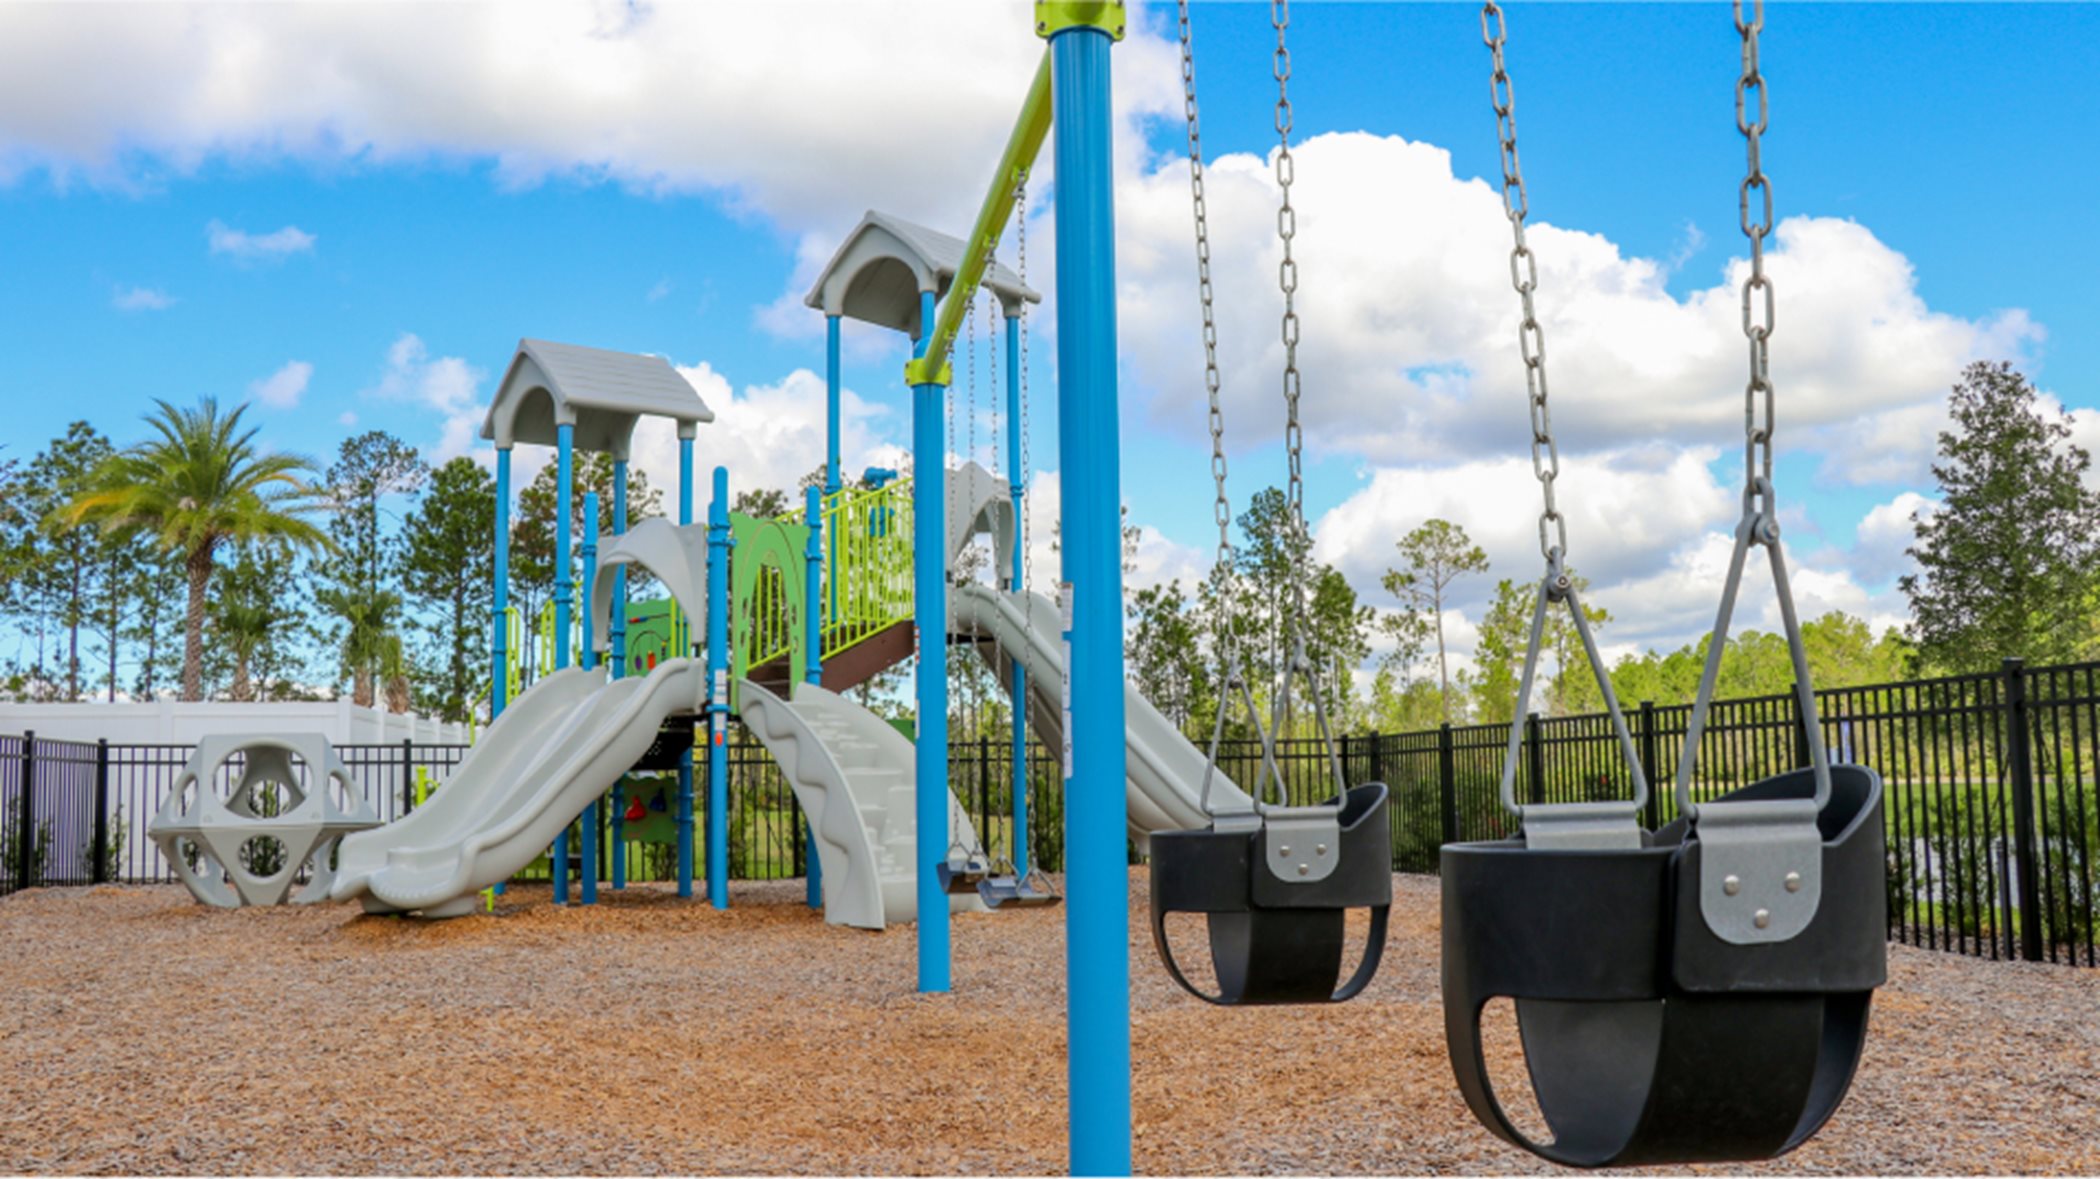 Silverleaf playground